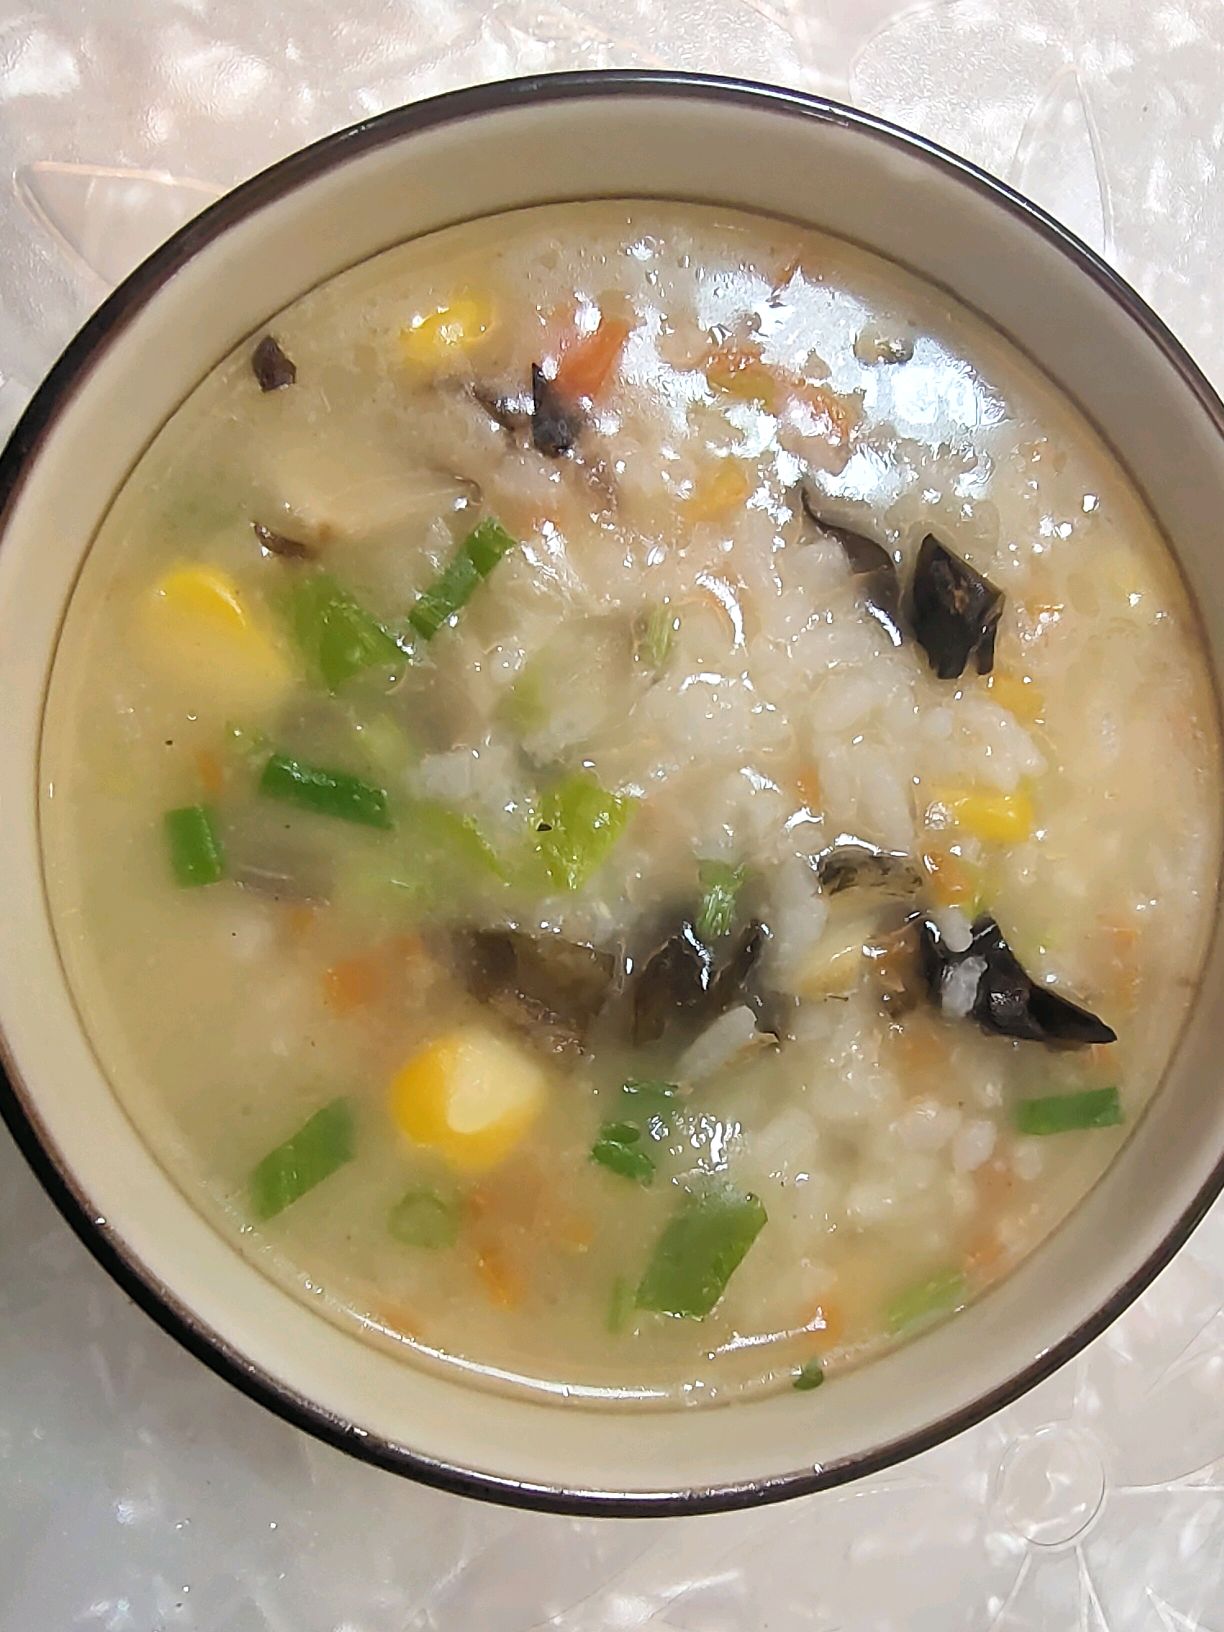 鲍鱼海鲜粥,鲍鱼海鲜粥的家常做法 - 美食杰鲍鱼海鲜粥做法大全